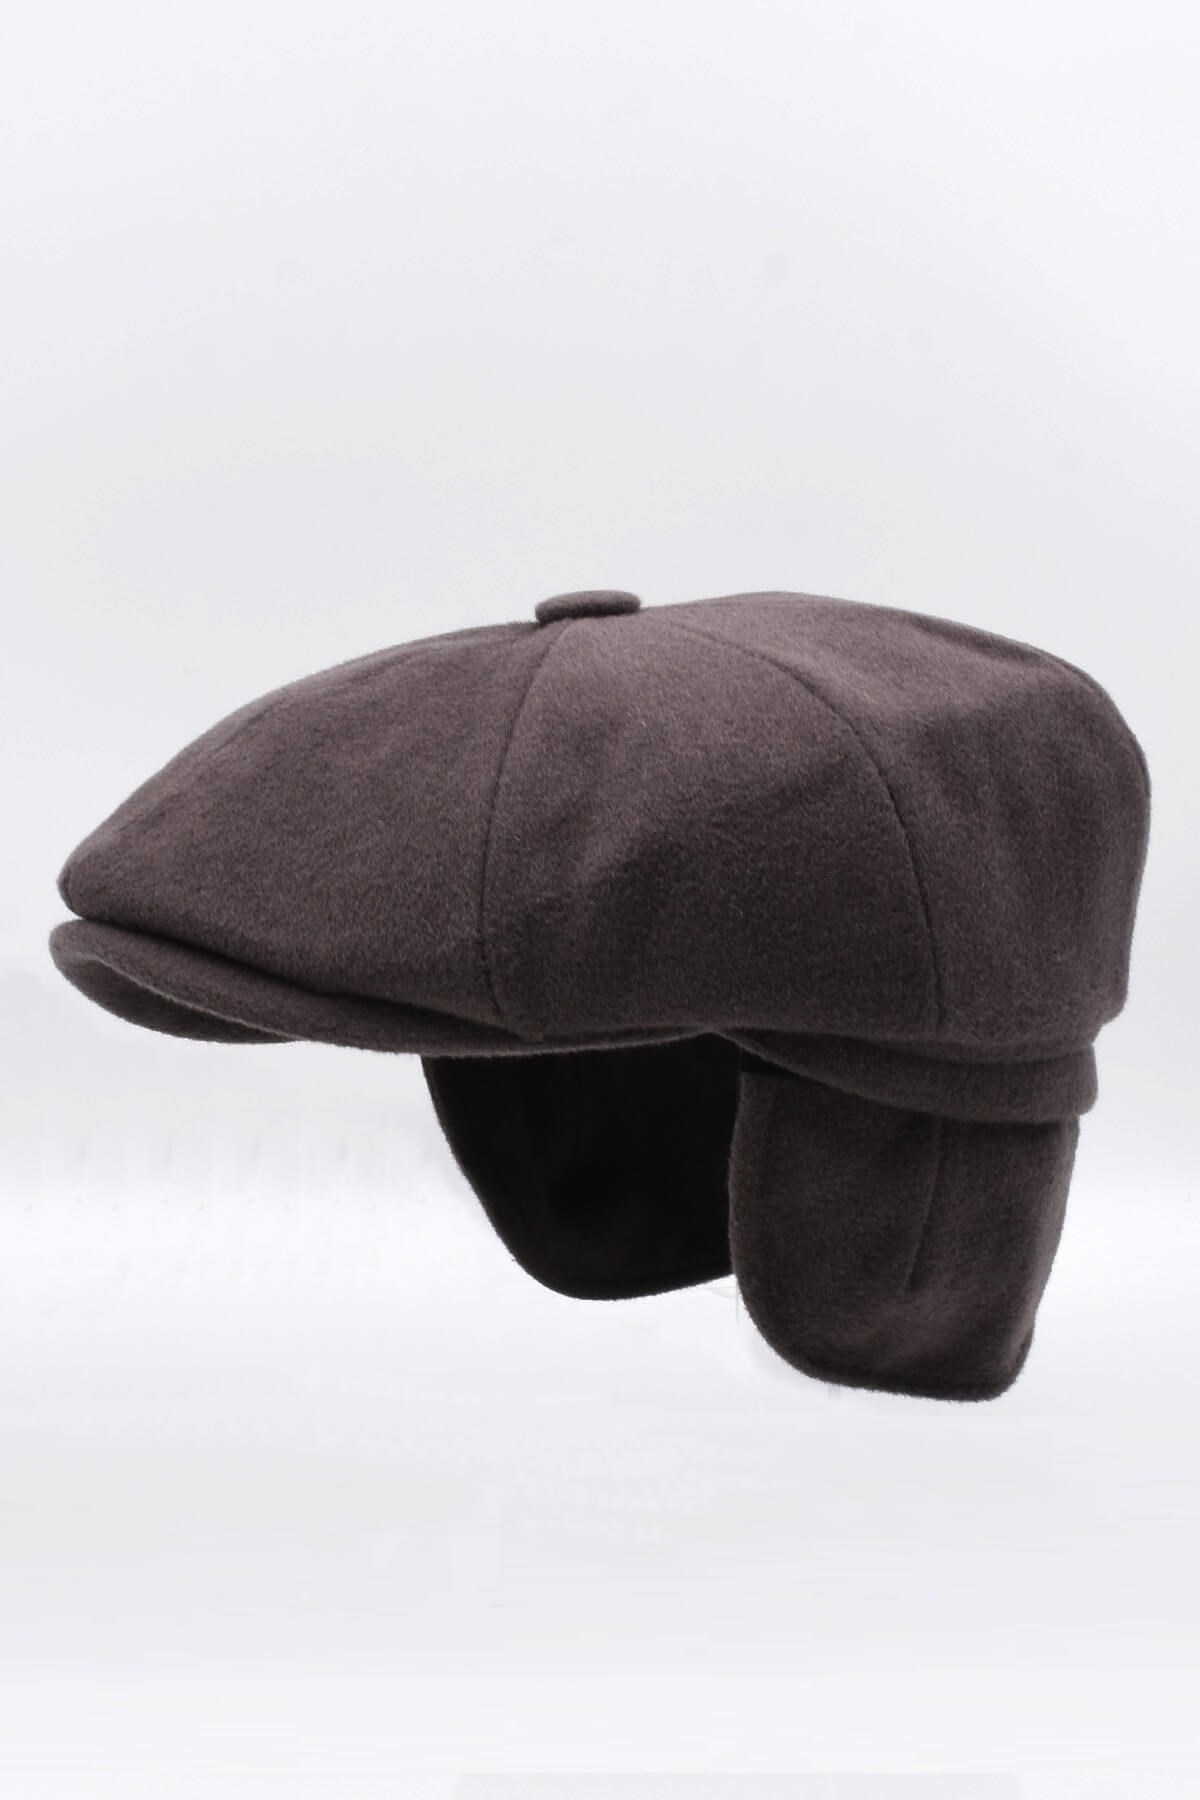 Külah Erkek %100 Kaşmir Yün Kışlık Kasket Kulaklı Şapka-Kahve KLH7051